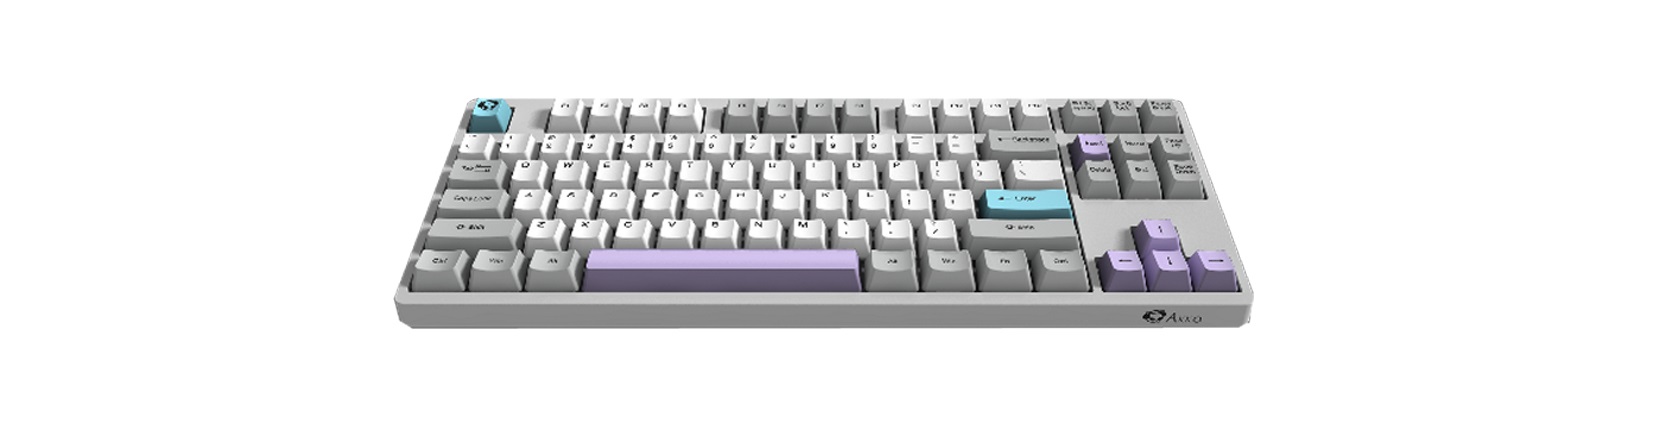 Bàn phím AKKO 3087 Silent (AKKO Switch pink) trang bị bộ keycap pbt cao cấp